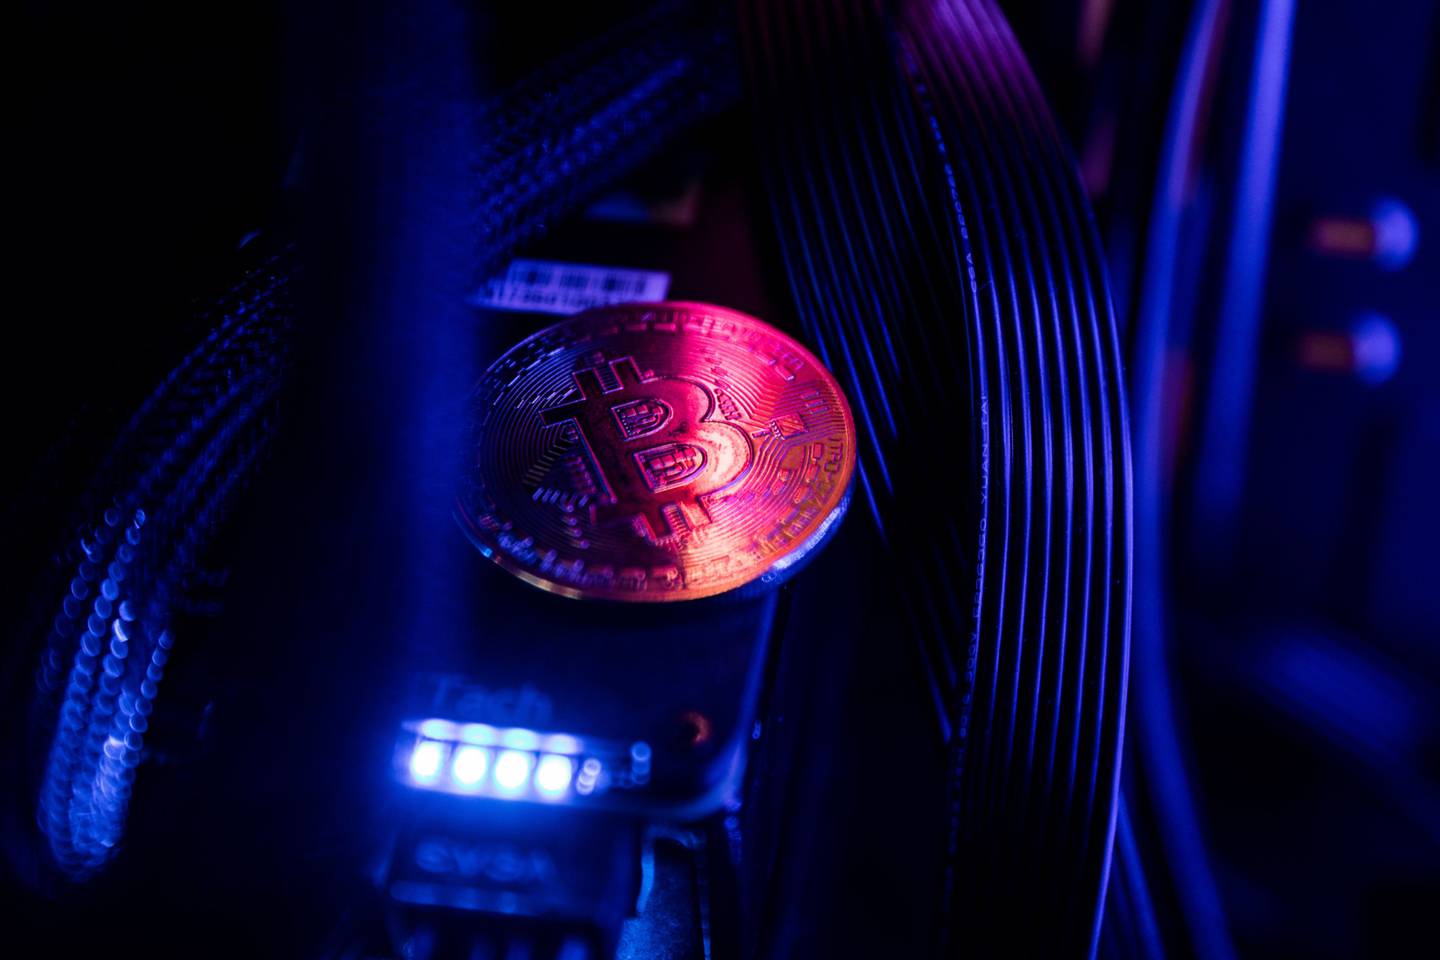 Un token que representa la moneda virtual bitcoin se encuentra entre los cables y la iluminación LED dentro de una computadora de "plataforma de minería" en esta fotografía arreglada en Budapest, Hungría, el miércoles 31 de enero de 2018.dfd